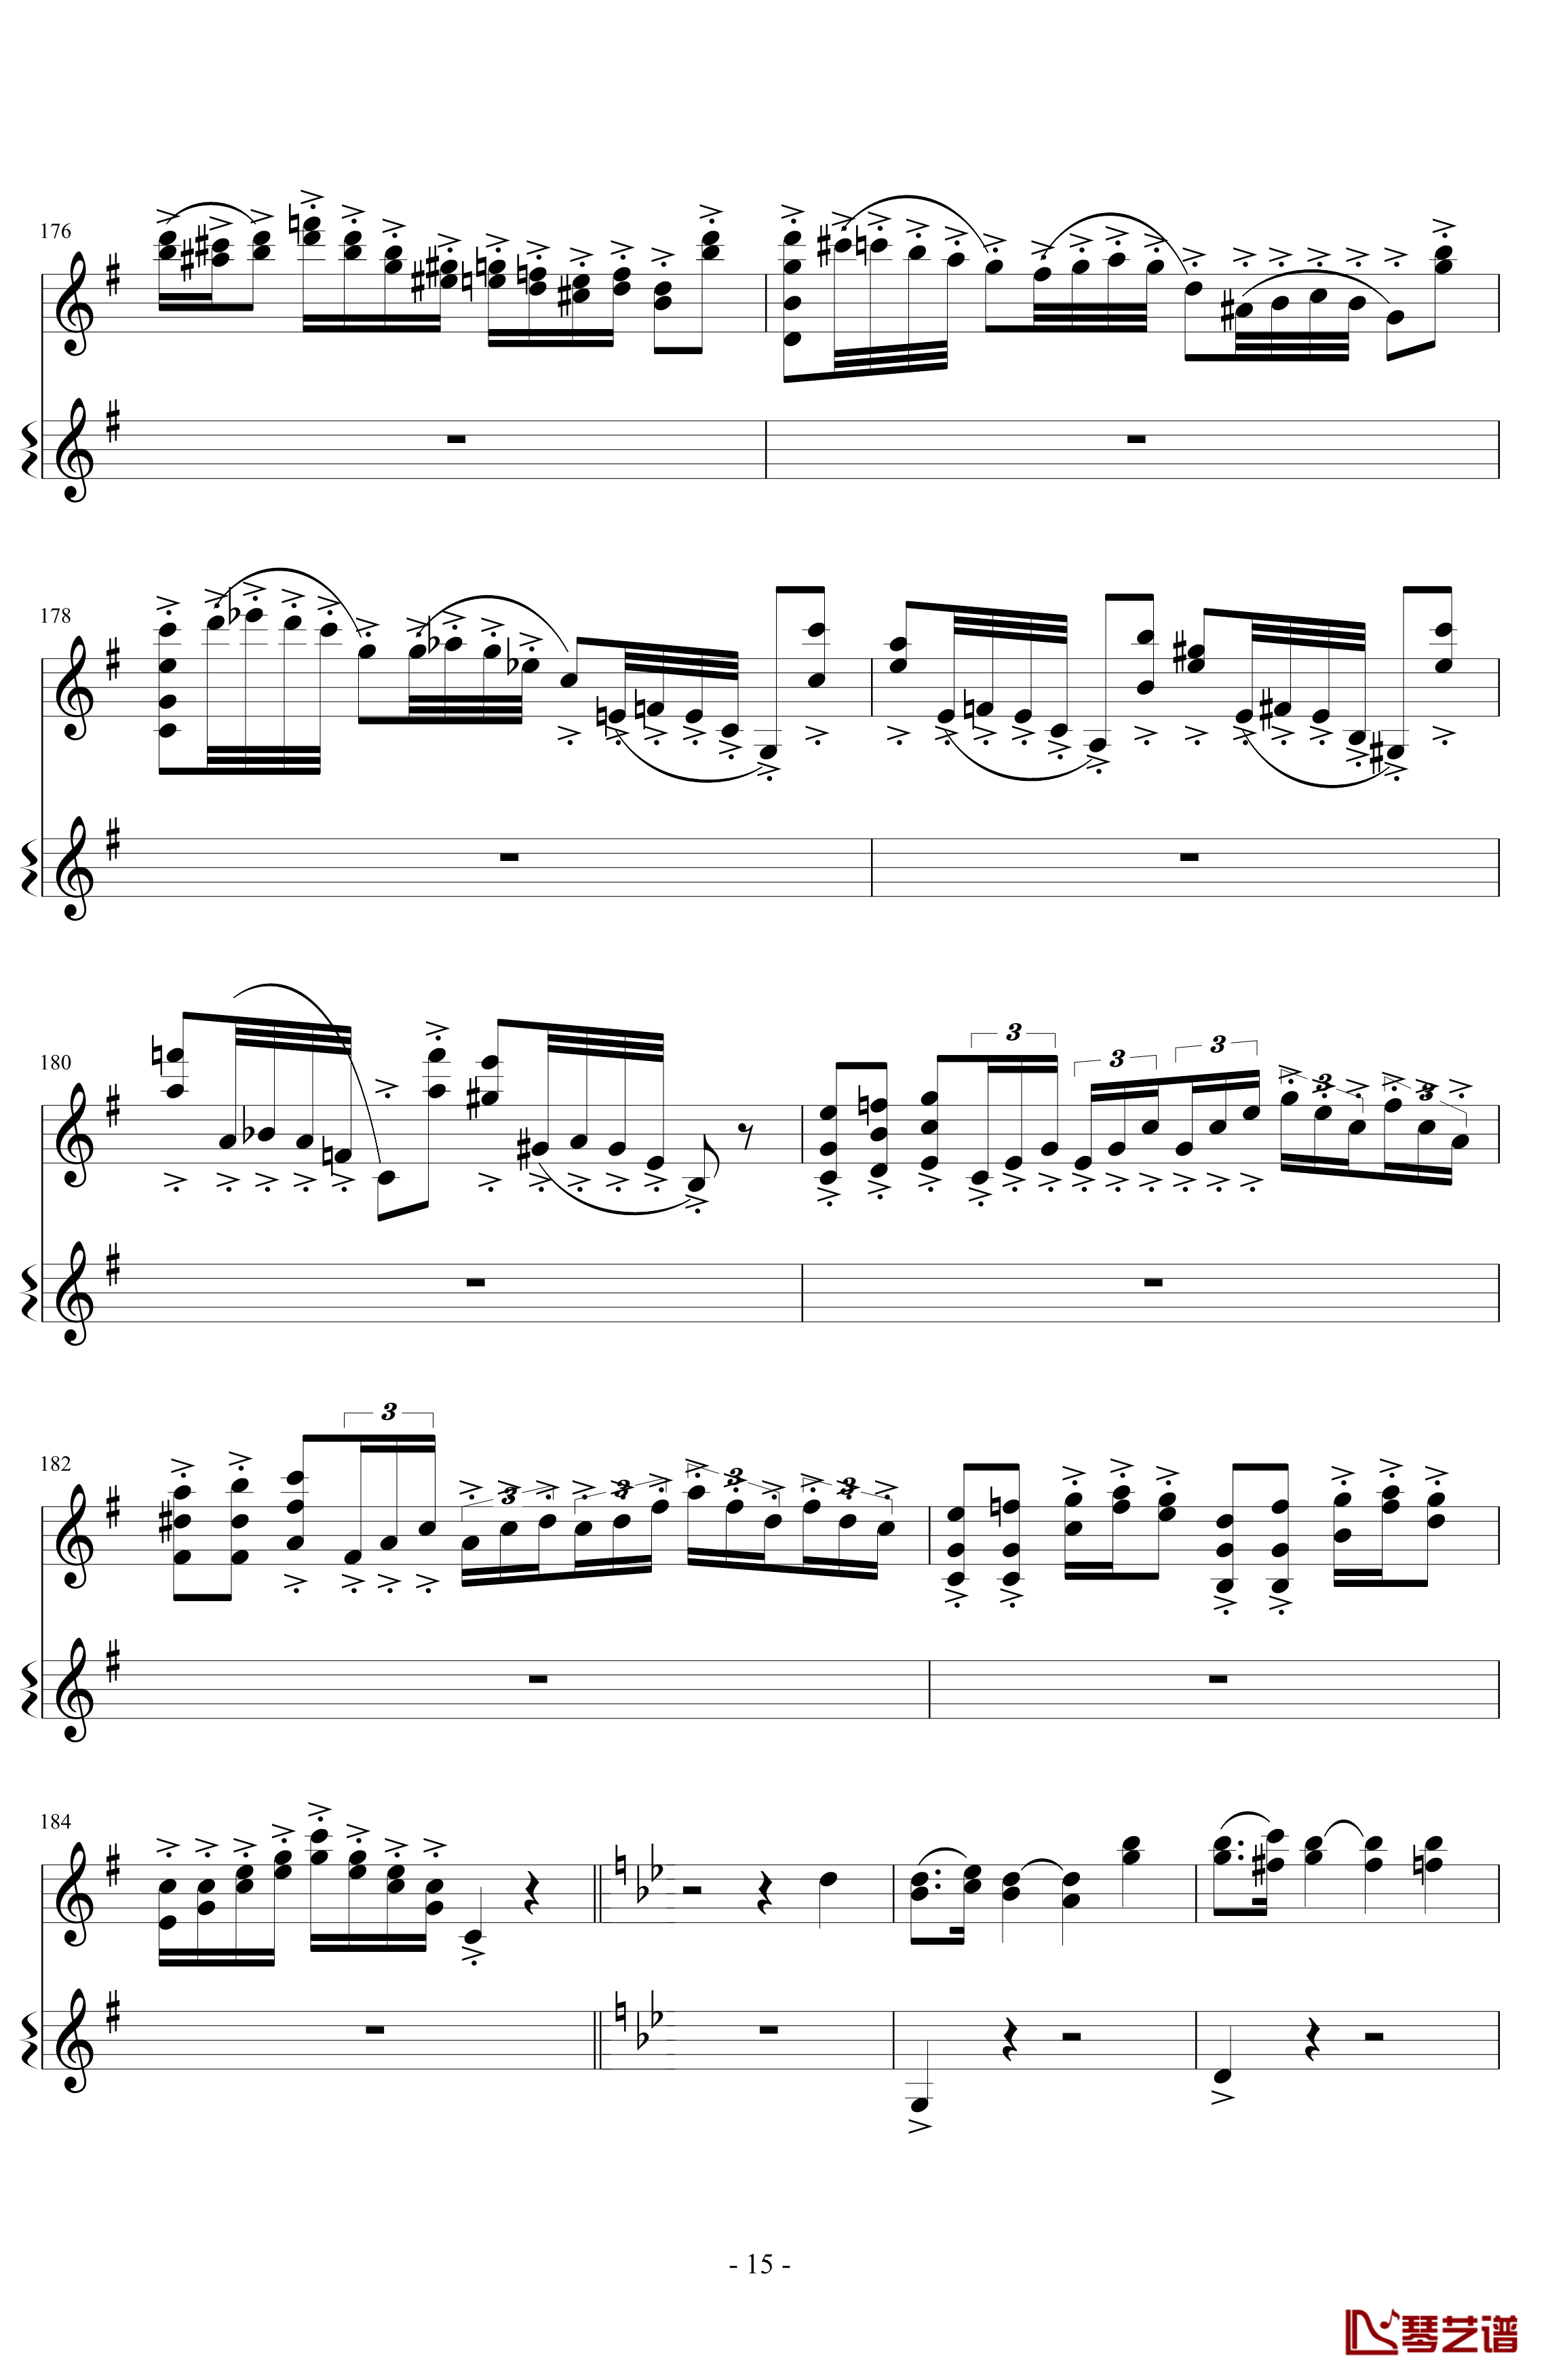 意大利国歌变奏曲钢琴谱-DXF15